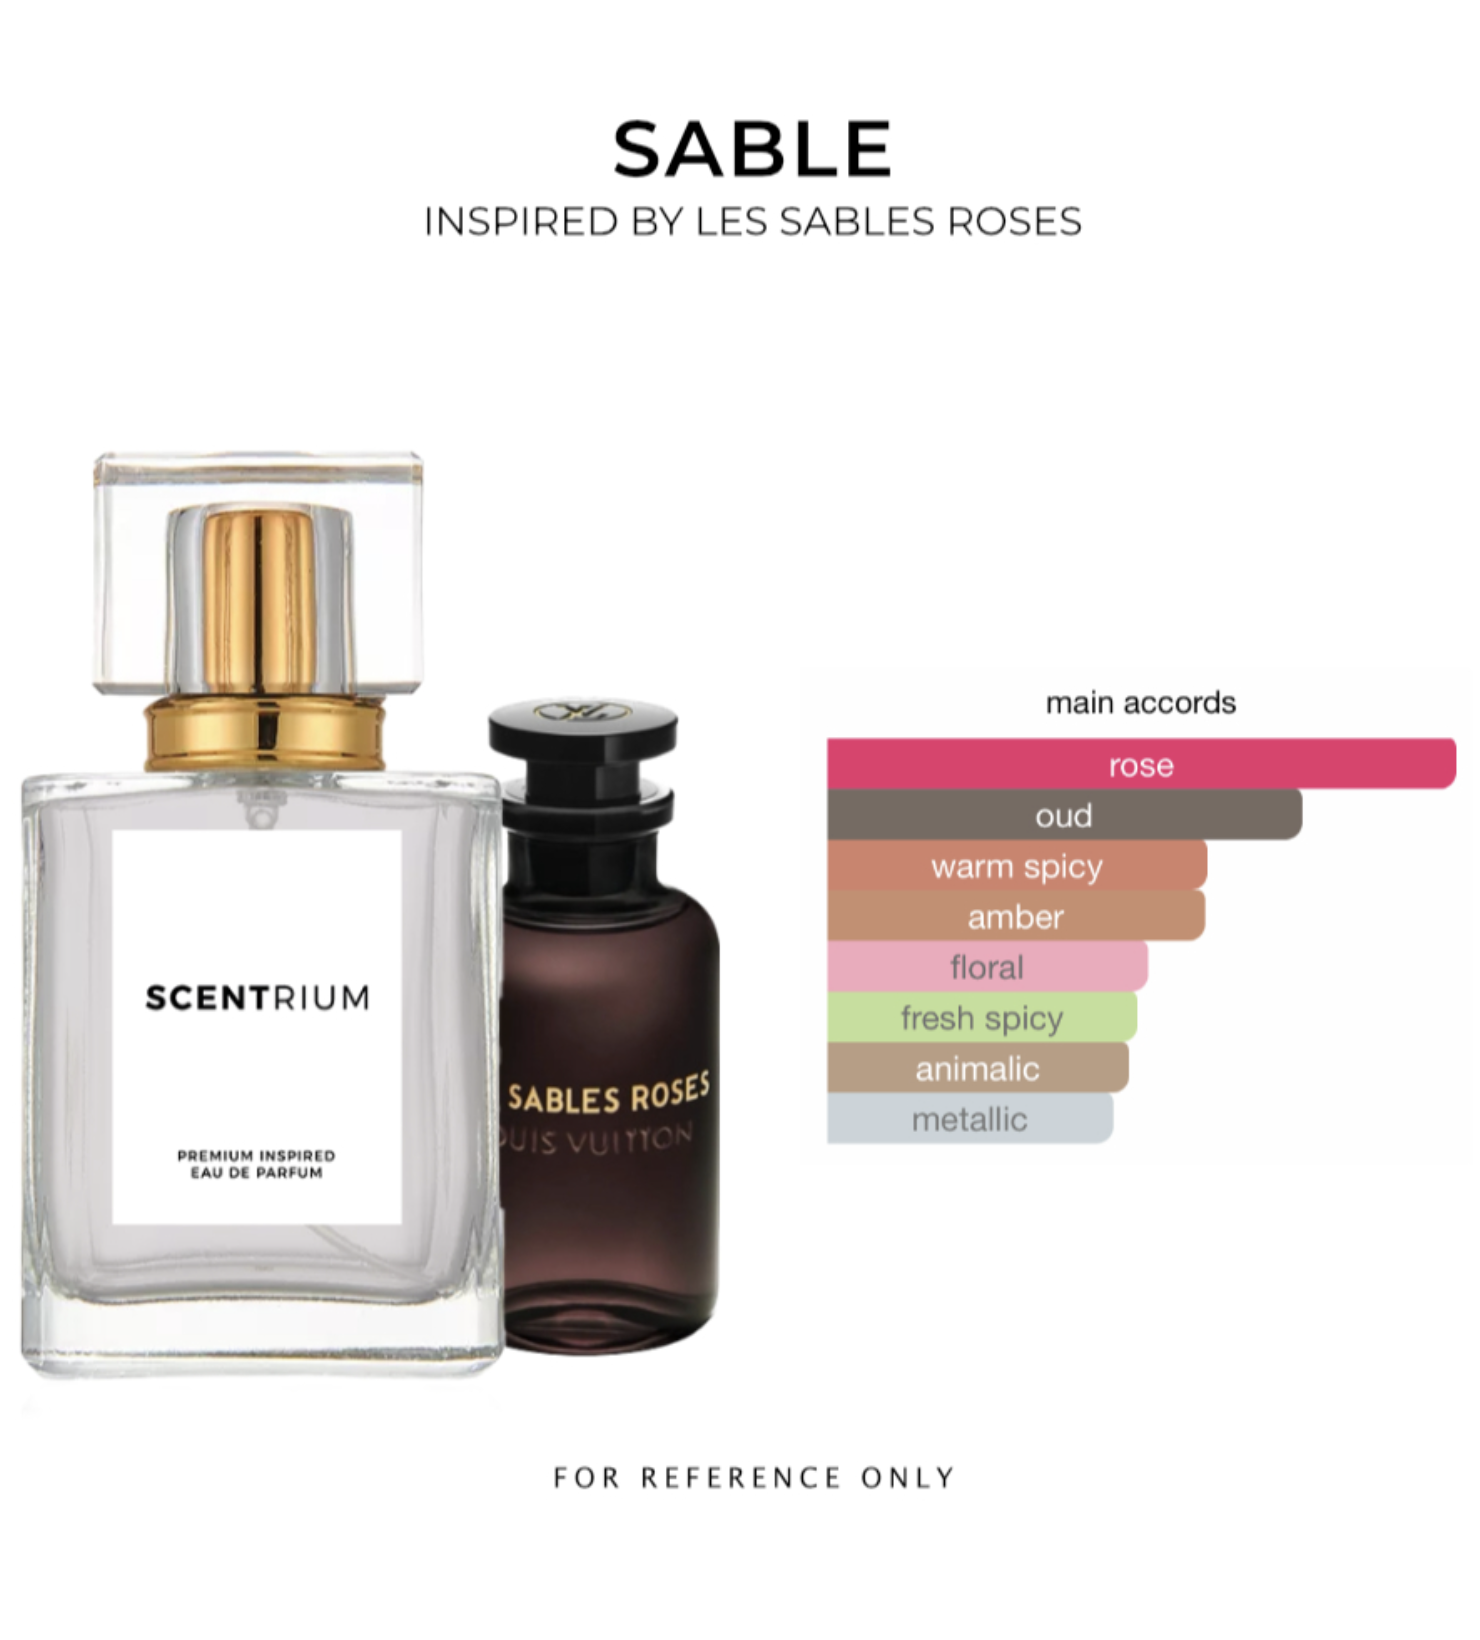 Our impression of Les Sables Roses Louis Vuitton Unisex Premium